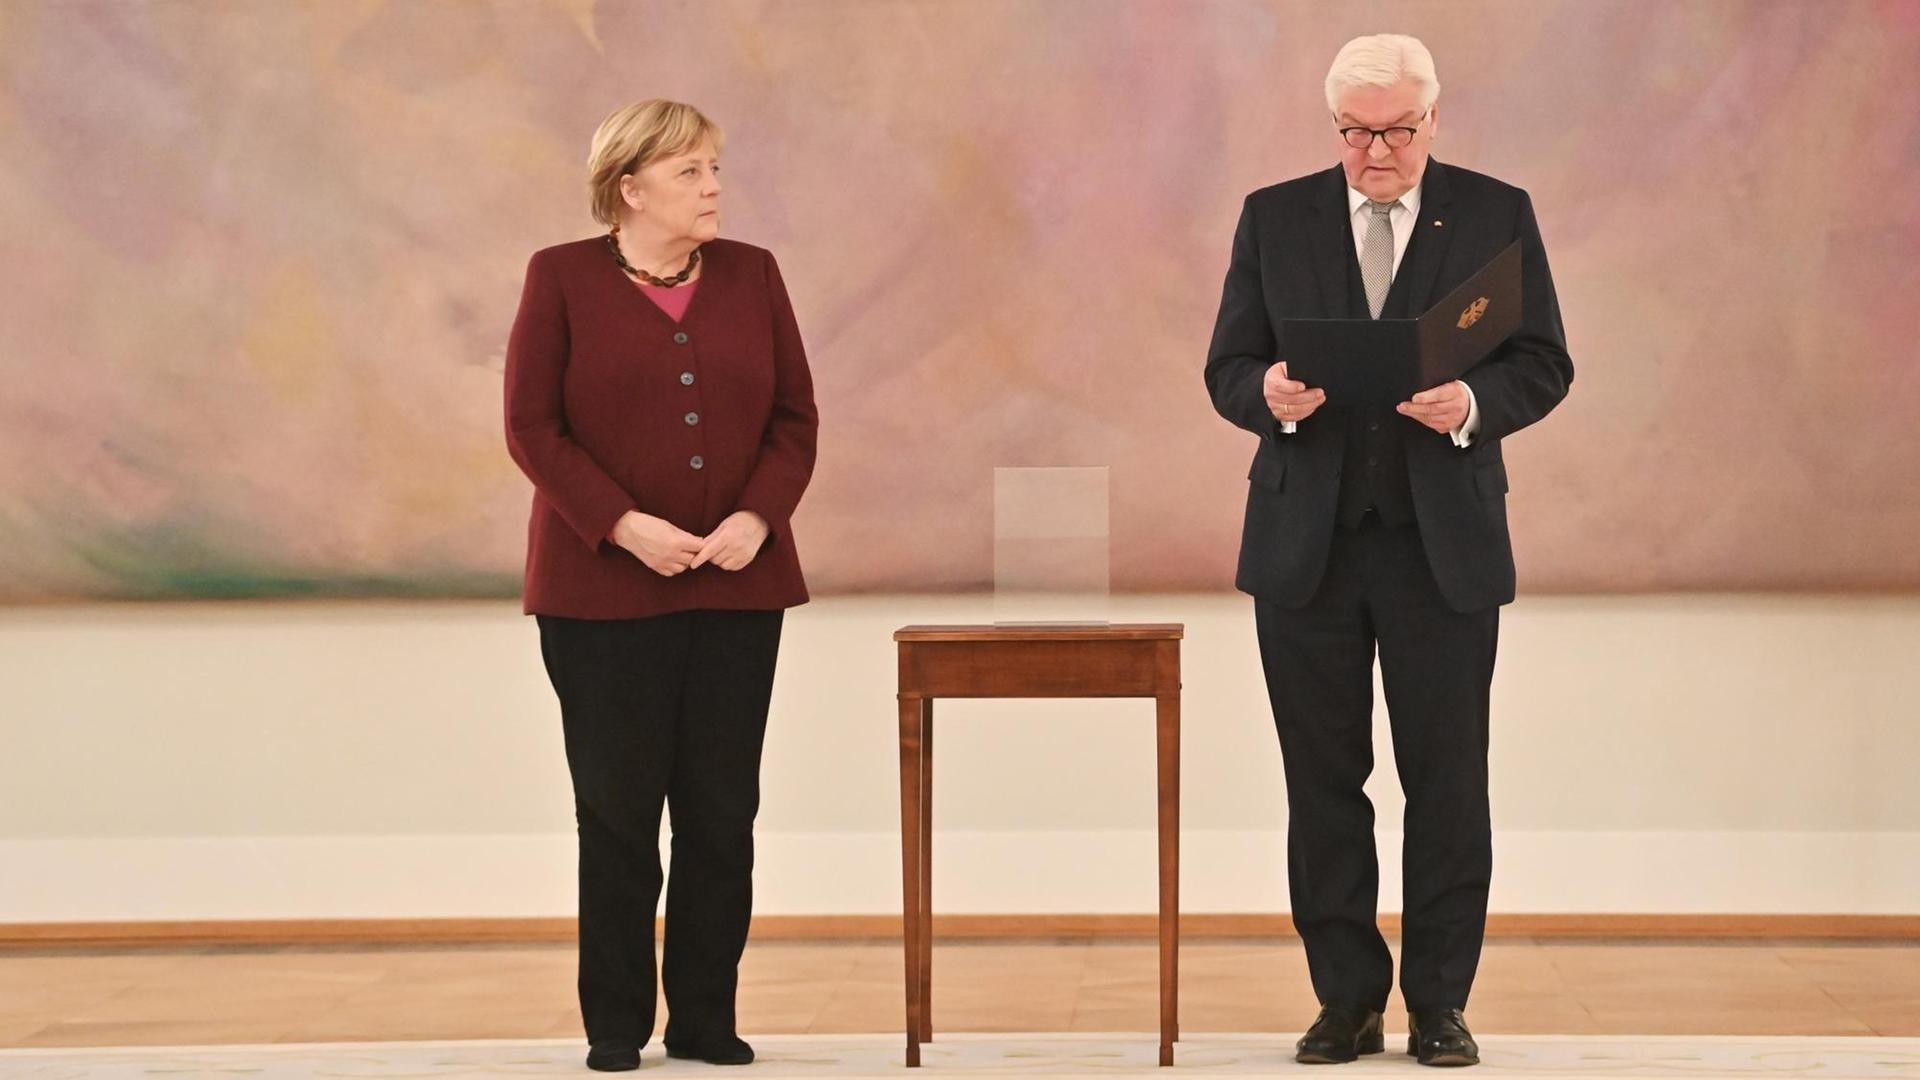 Bundespräsident Frank-Walter Steinmeier händigt Bundeskanzlerin Angela Merkel die Entlassungsurkunde aus.Beide stehen vor einem abstrakten rosa Gemälde, zwischen ihnen: ein hochbeiniger Beistelltisch.